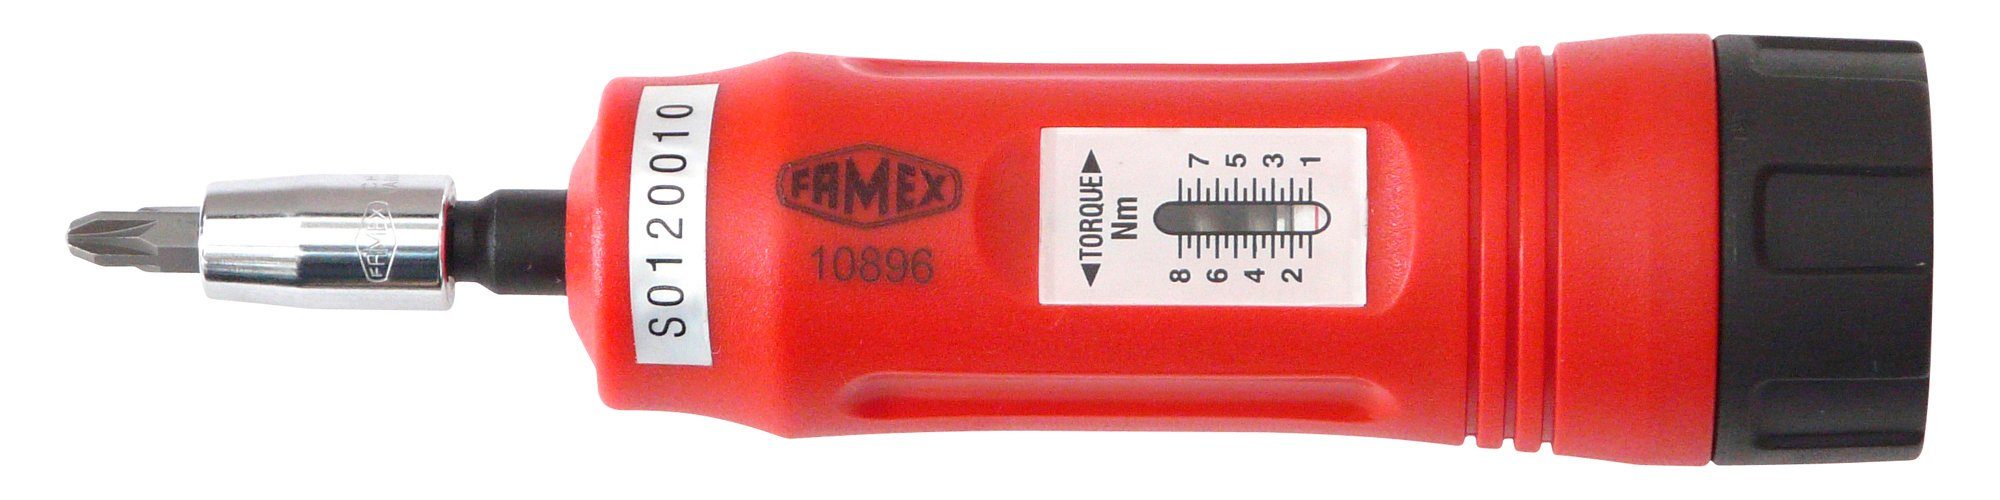 FAMEX Drehmomentschlüssel 1-8 Nm 10896,